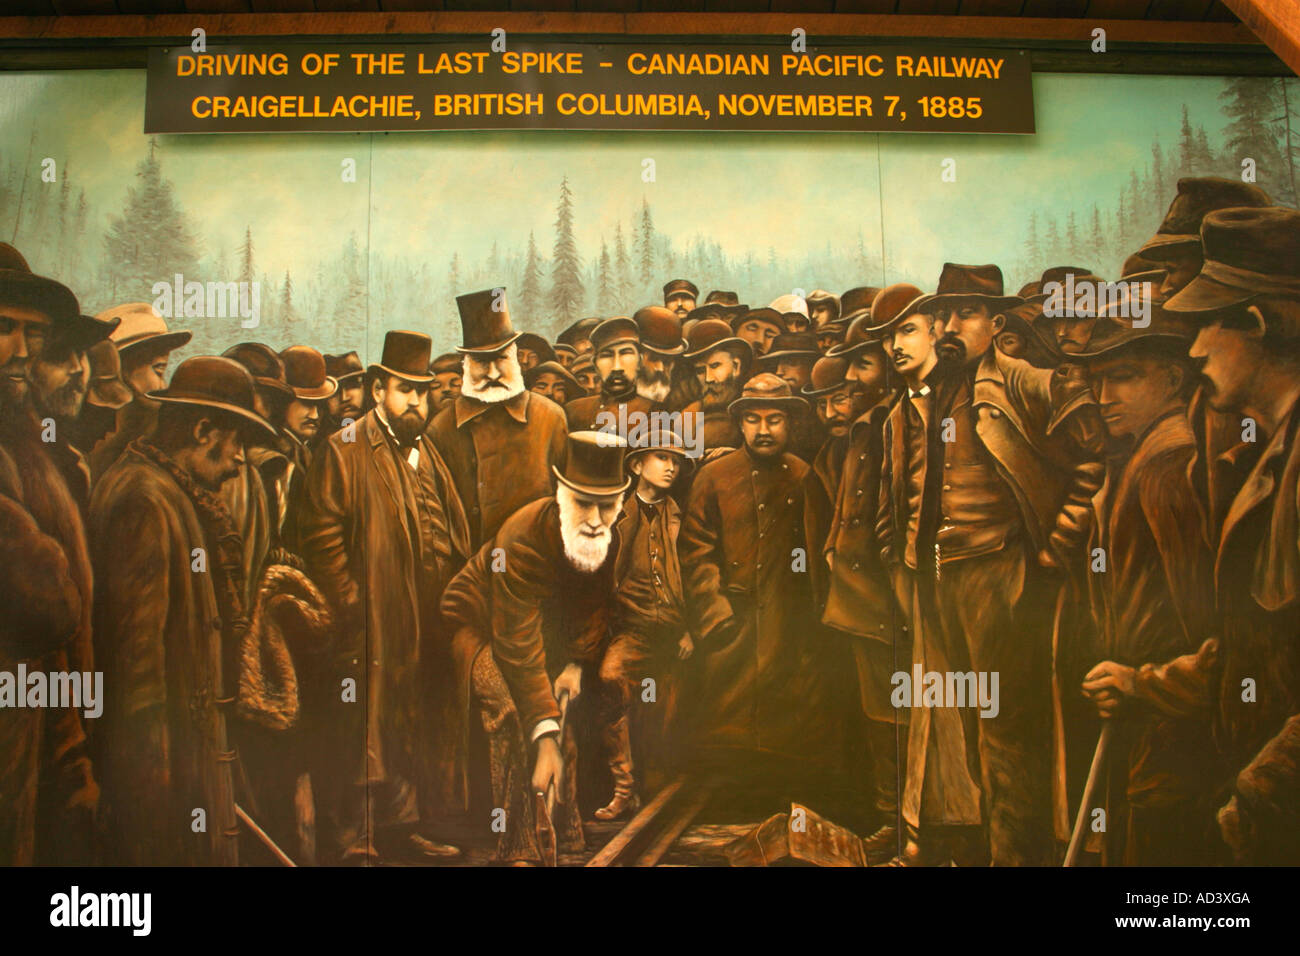 Wandbild von der letzten Spitze in Craigellachie, historischer Moment in der kanadischen Geschichte mit Eisenbahn fertiggestellt, so verbindende Kanada Stockfoto